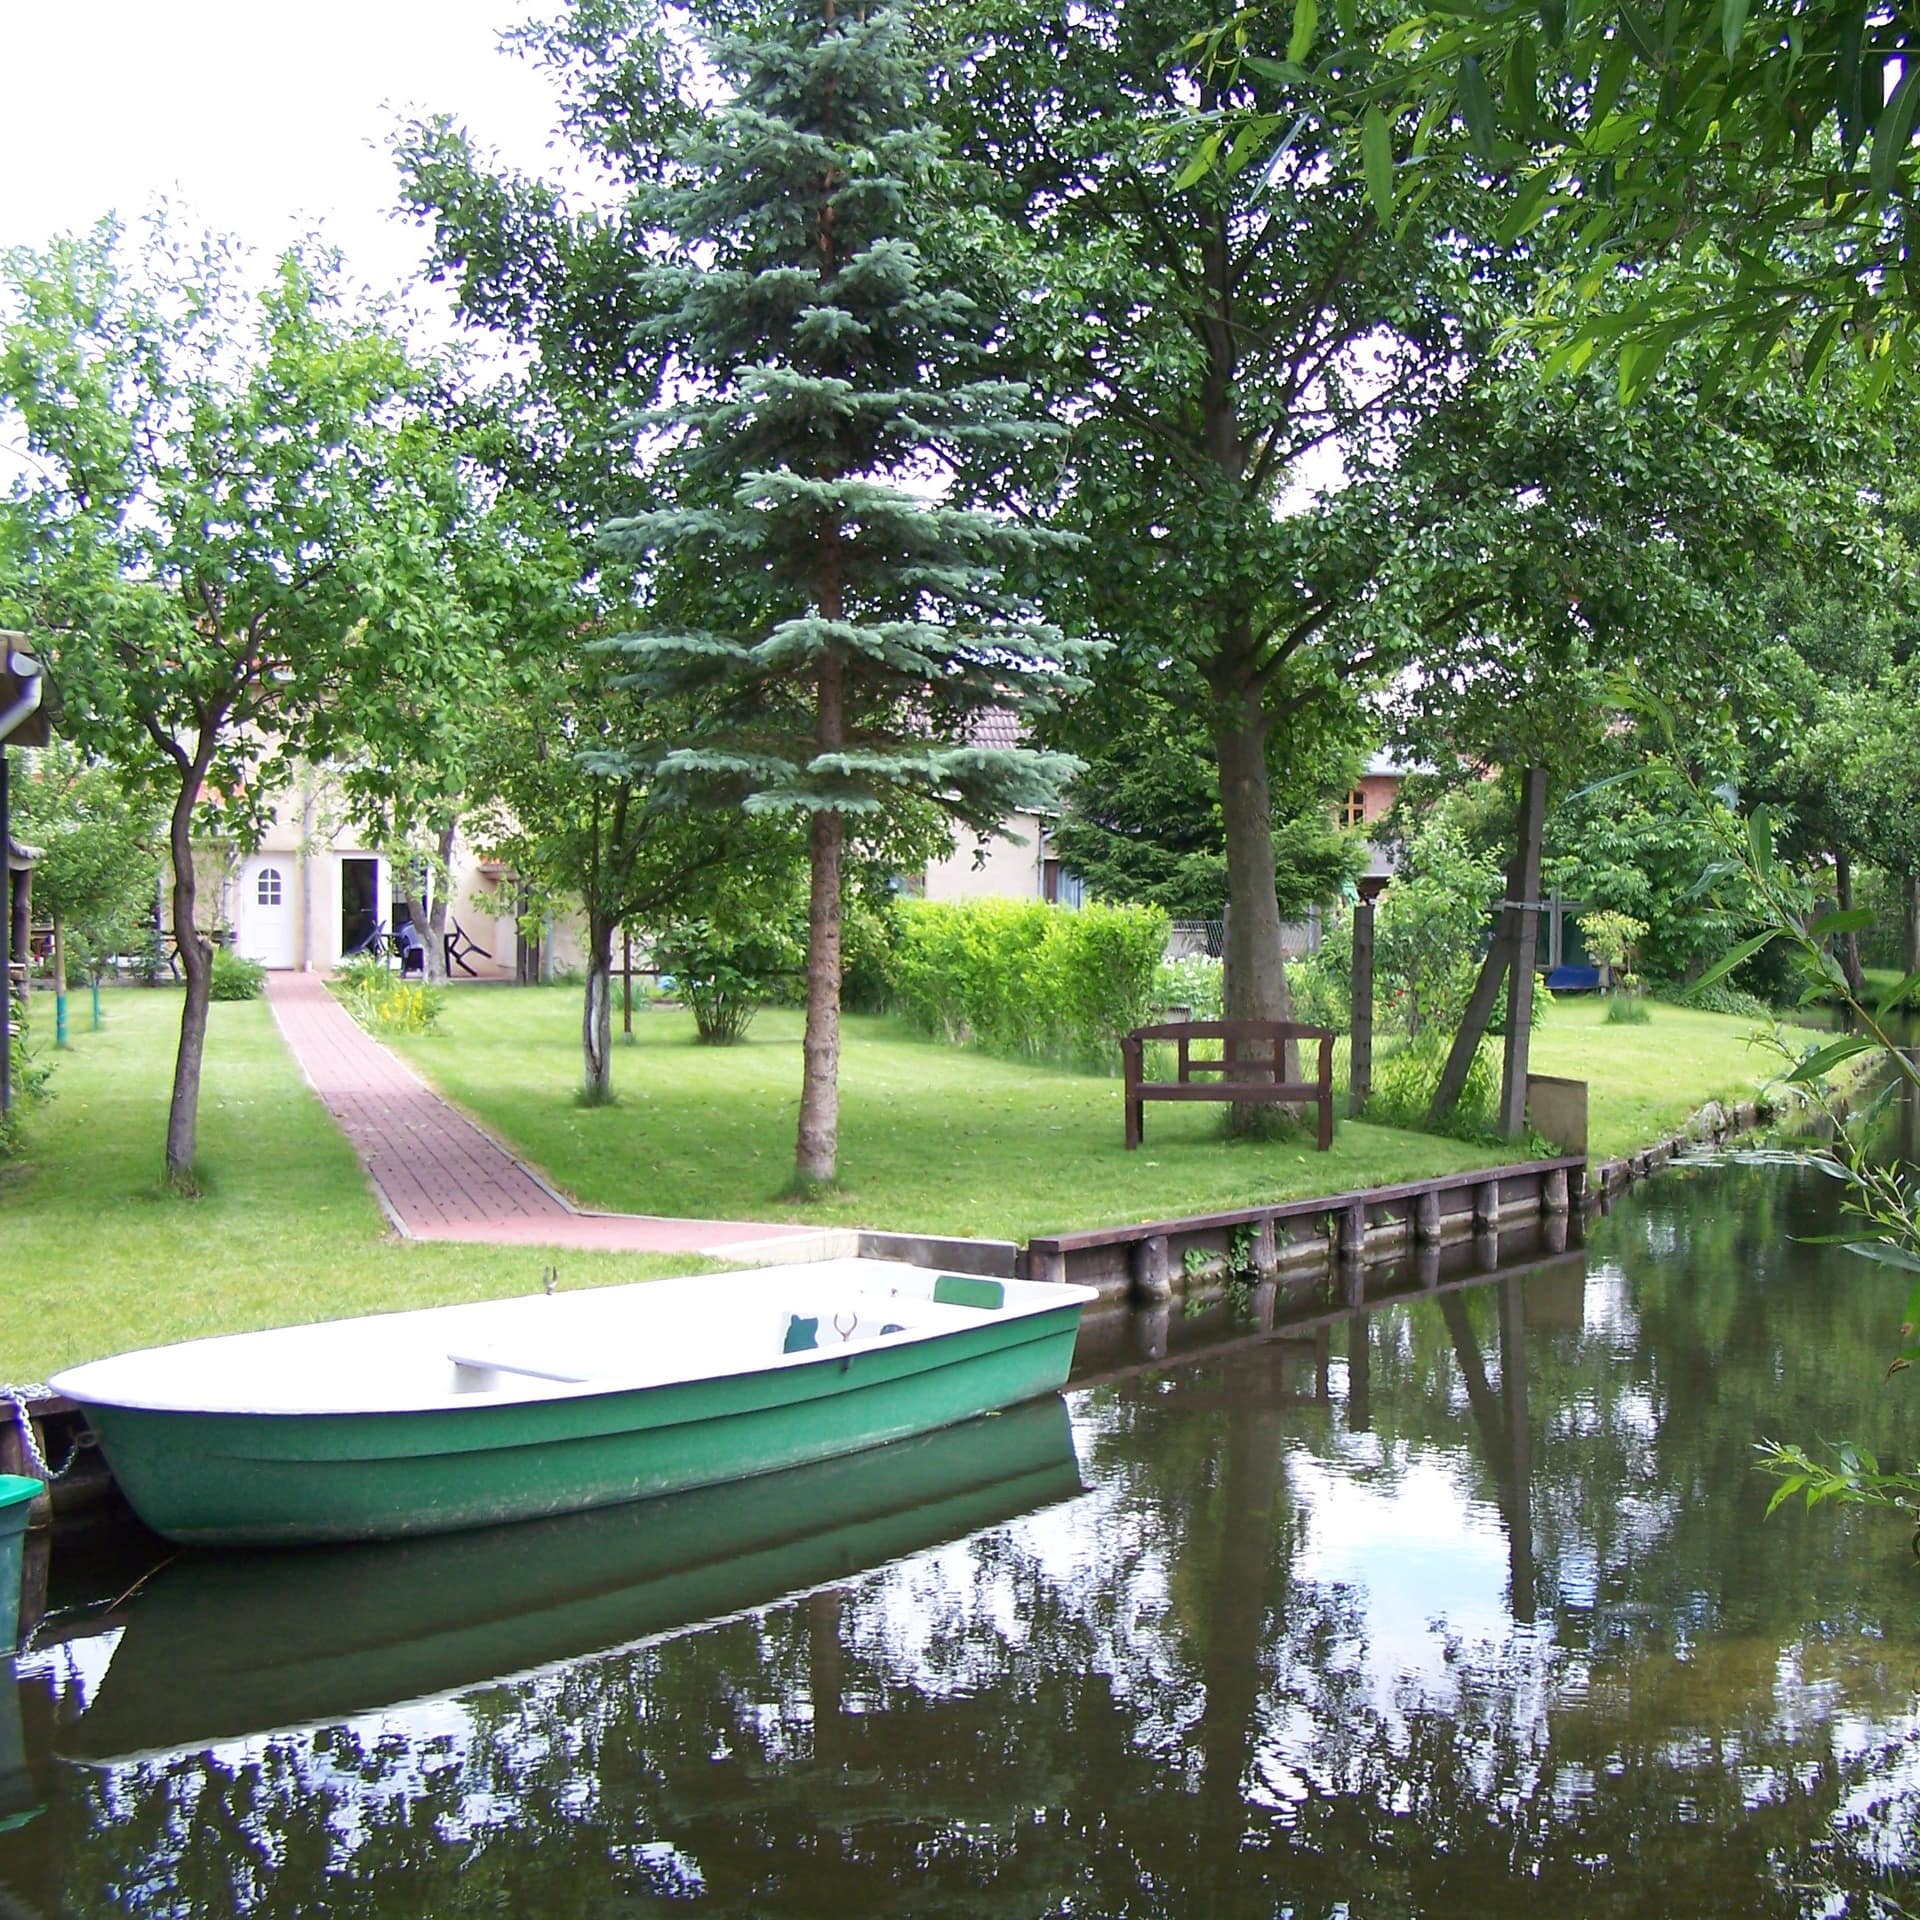 Ferienwohnung in Brandenburger Spreewald mit Boot direkt an einem Bach gelegen